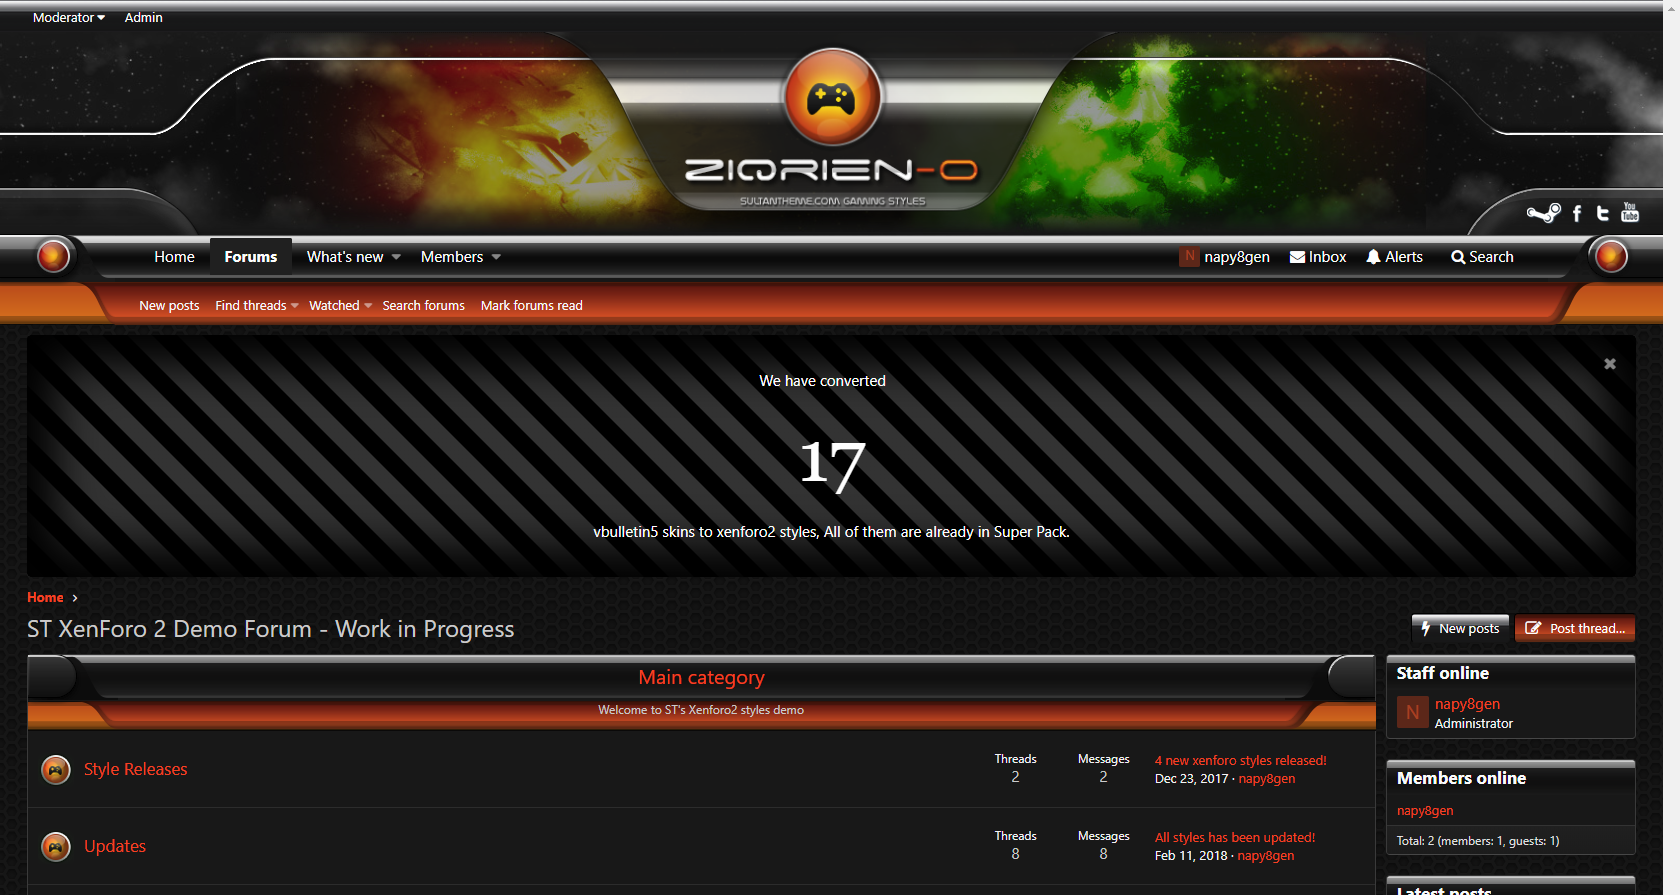 ziqrien o 2 - 7 new xenforo2 styles released!